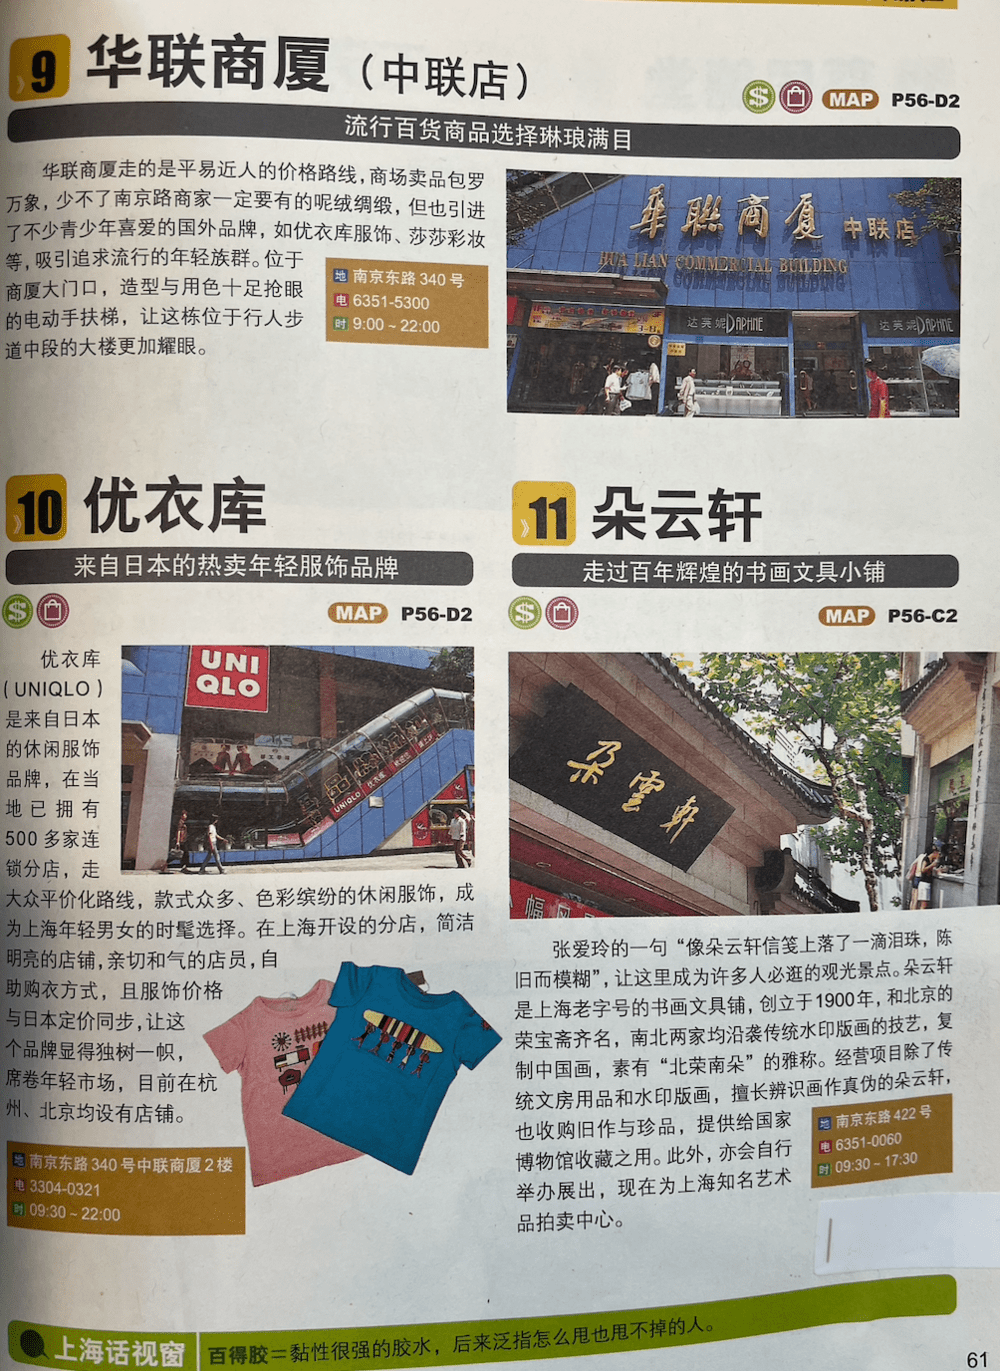 2007年的指南介绍南京路时除了百货公司，也介绍了优衣库